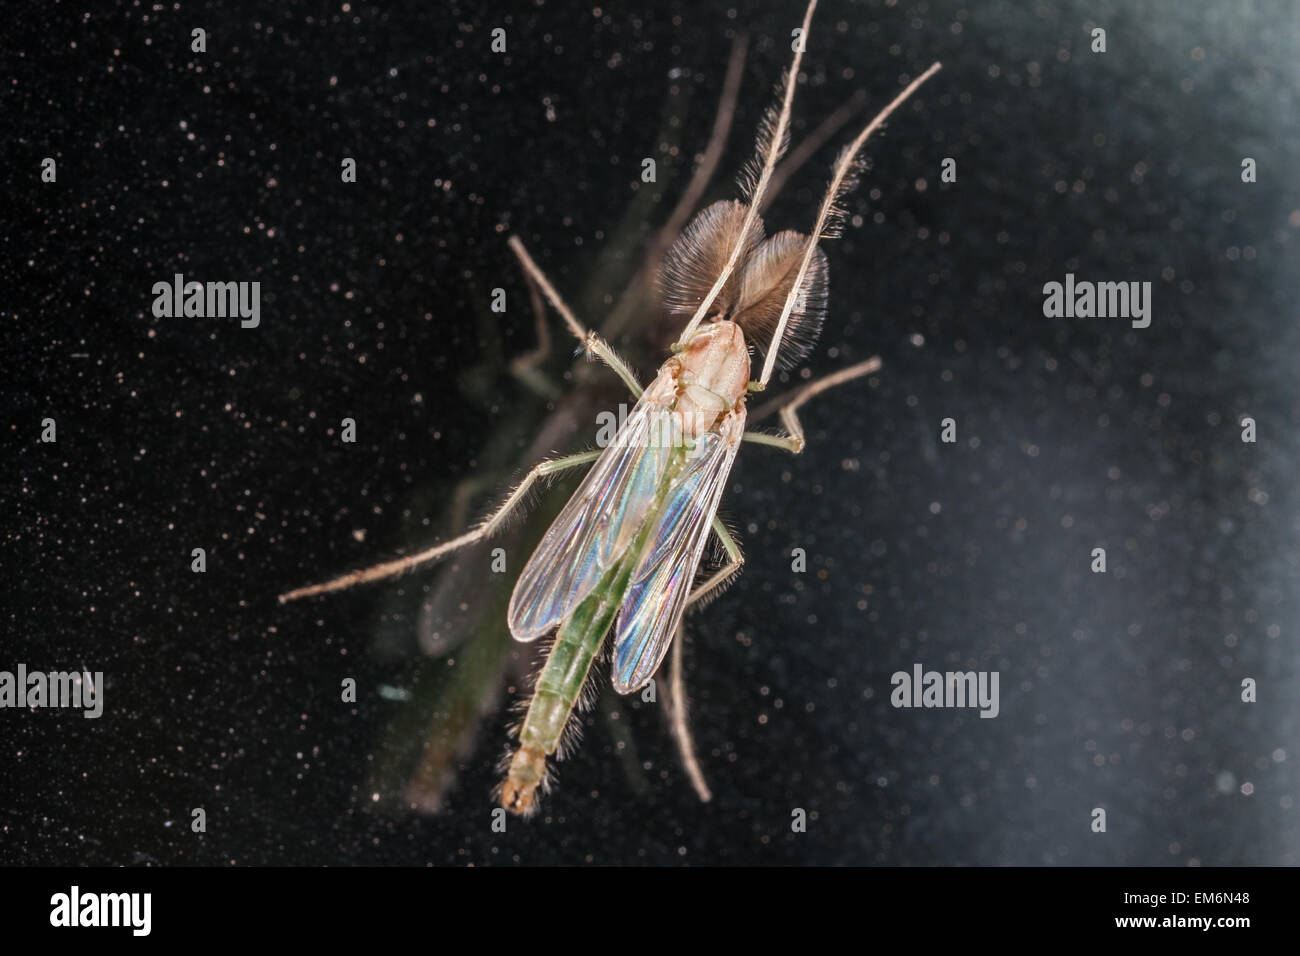 Chironomidae midge macro Stock Photo